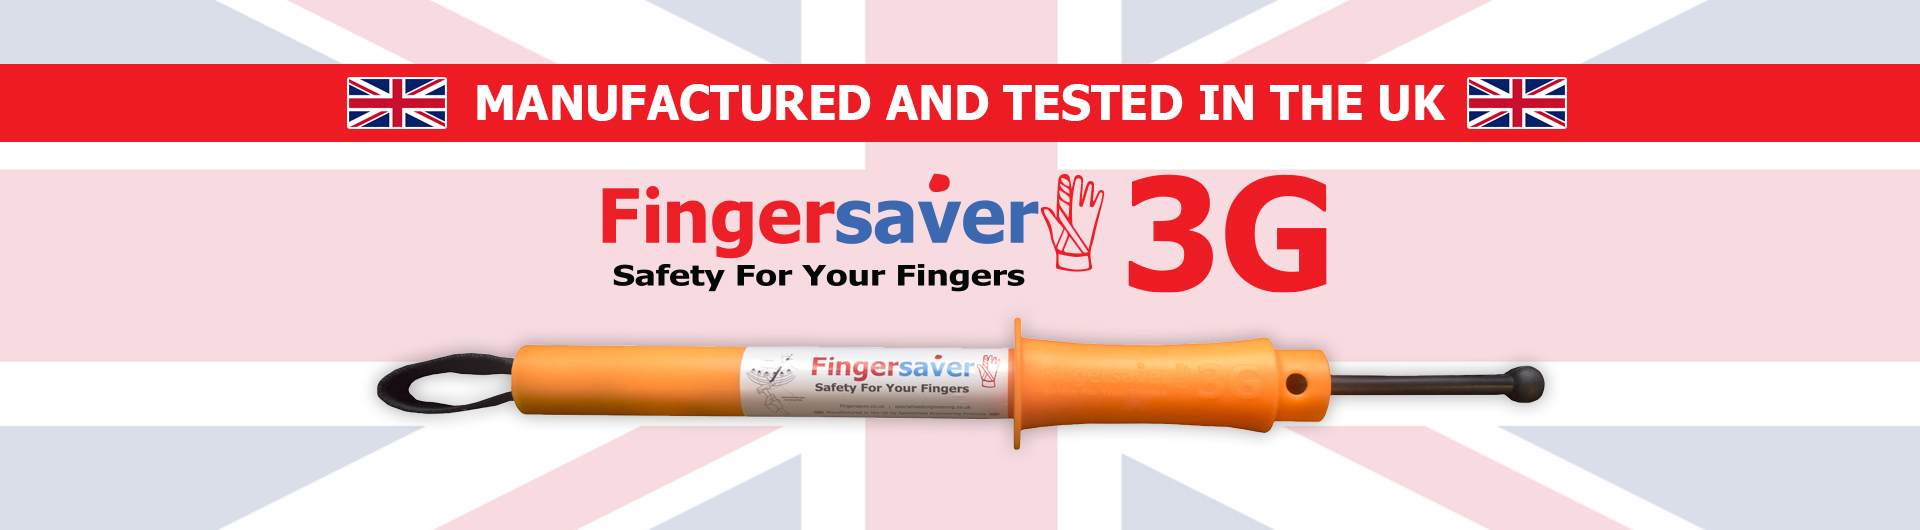 fingersaver 3g